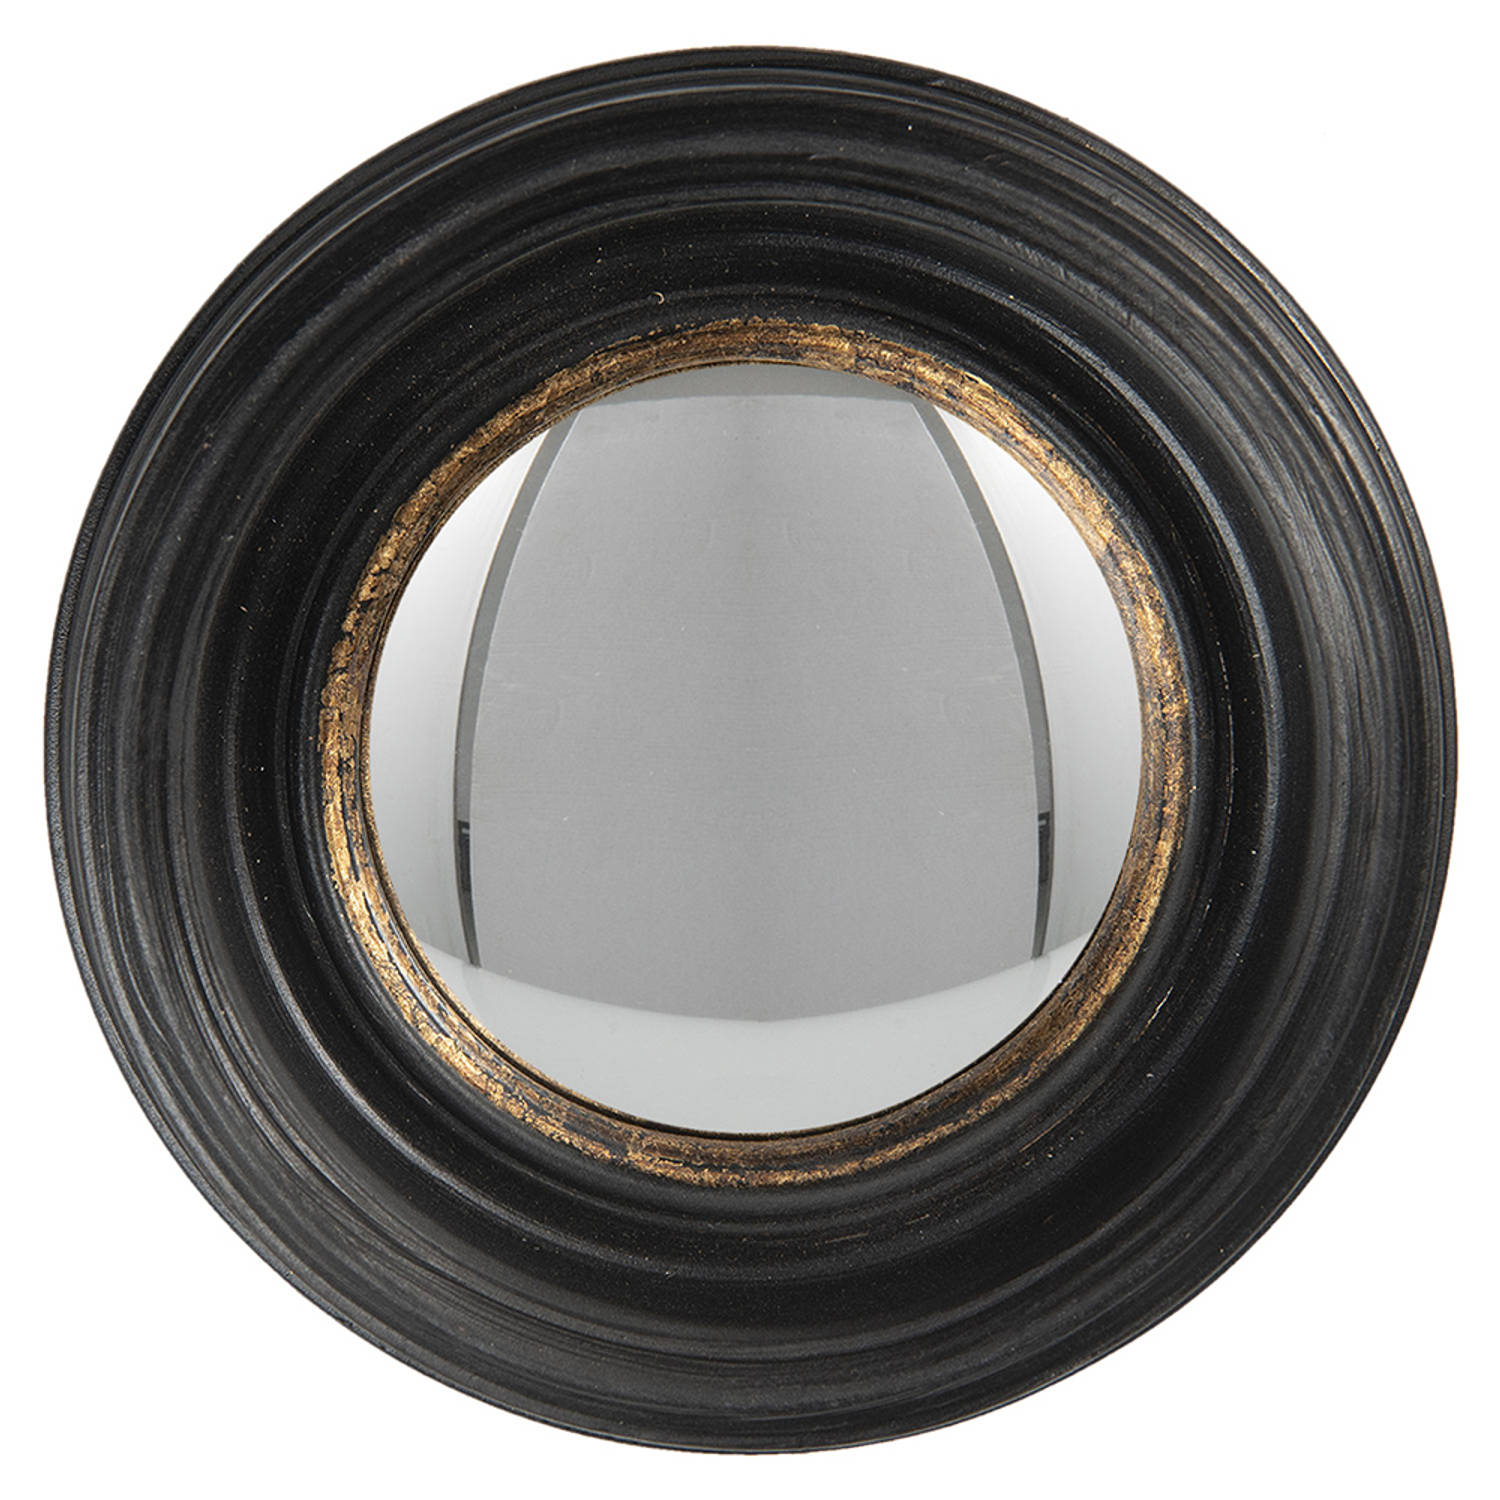 HAES DECO Bolle ronde Spiegel Zwart Ø 16x4 cm Polyurethaan ( PU) Wandspiegel, Spiegel rond, Convex G